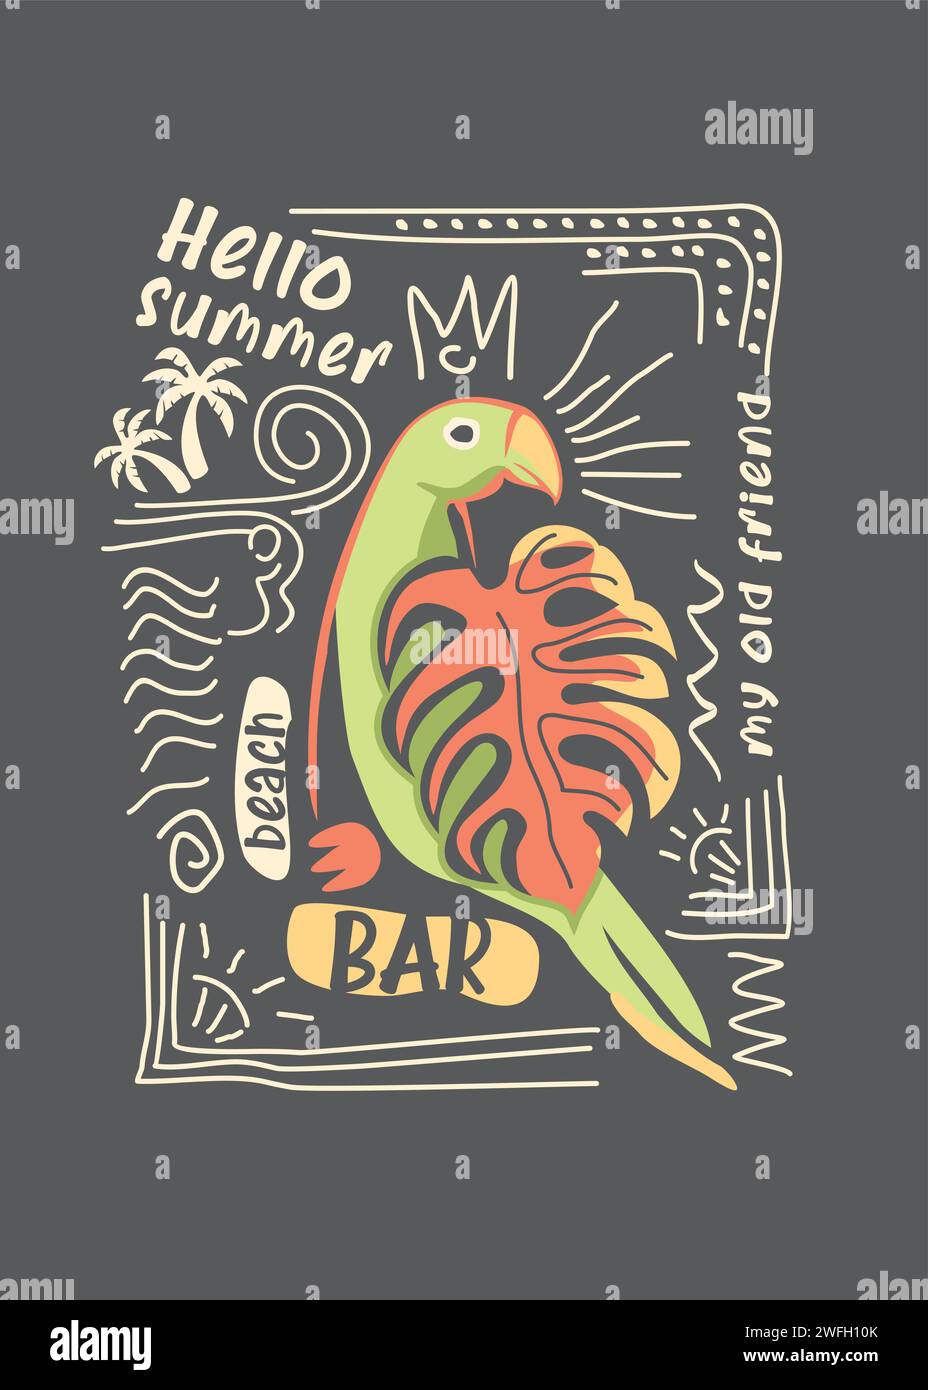 Grafica del pappagallo di Macao con elementi di design e scarabocchi. Illustrazione vettoriale artistica con tema tropicale estivo, perfetta per la t-shirt pri Illustrazione Vettoriale